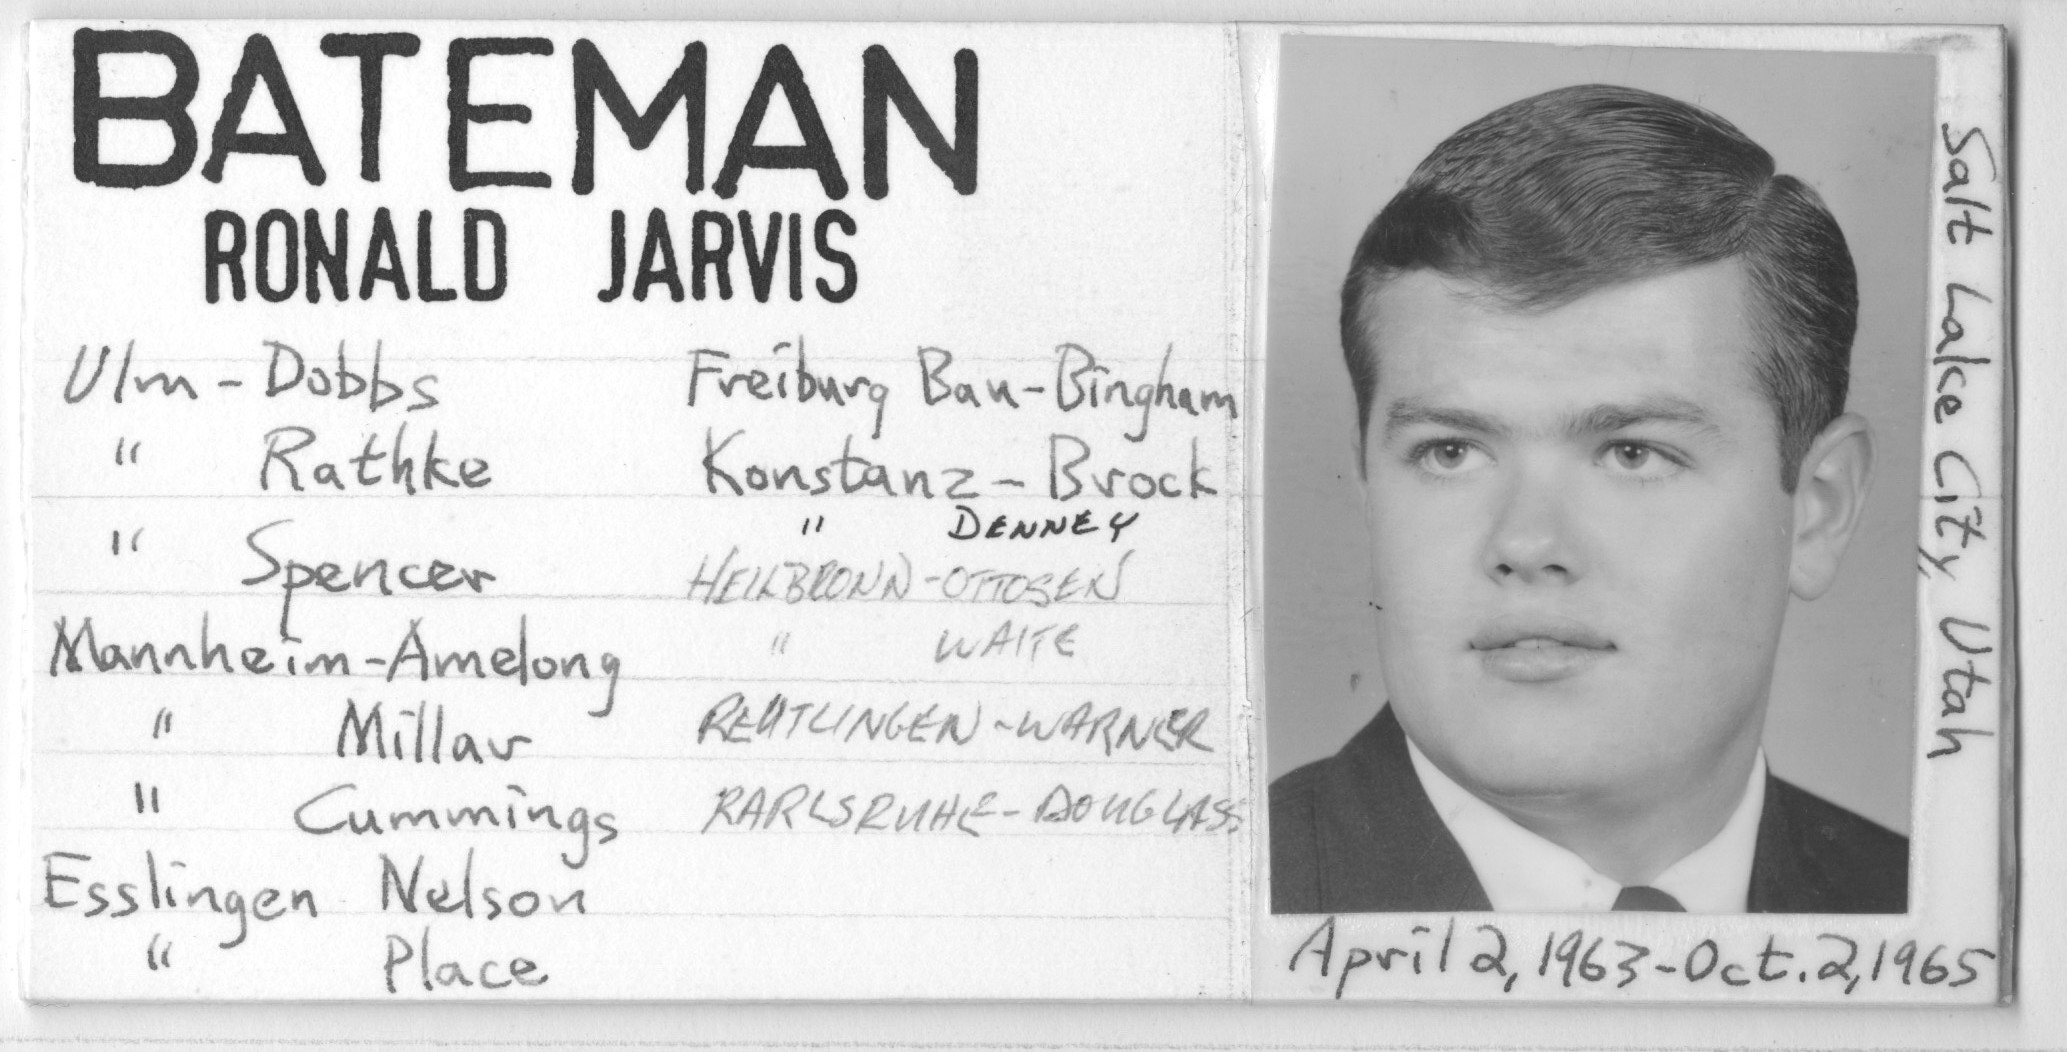 Bateman, Ronald Jarvis